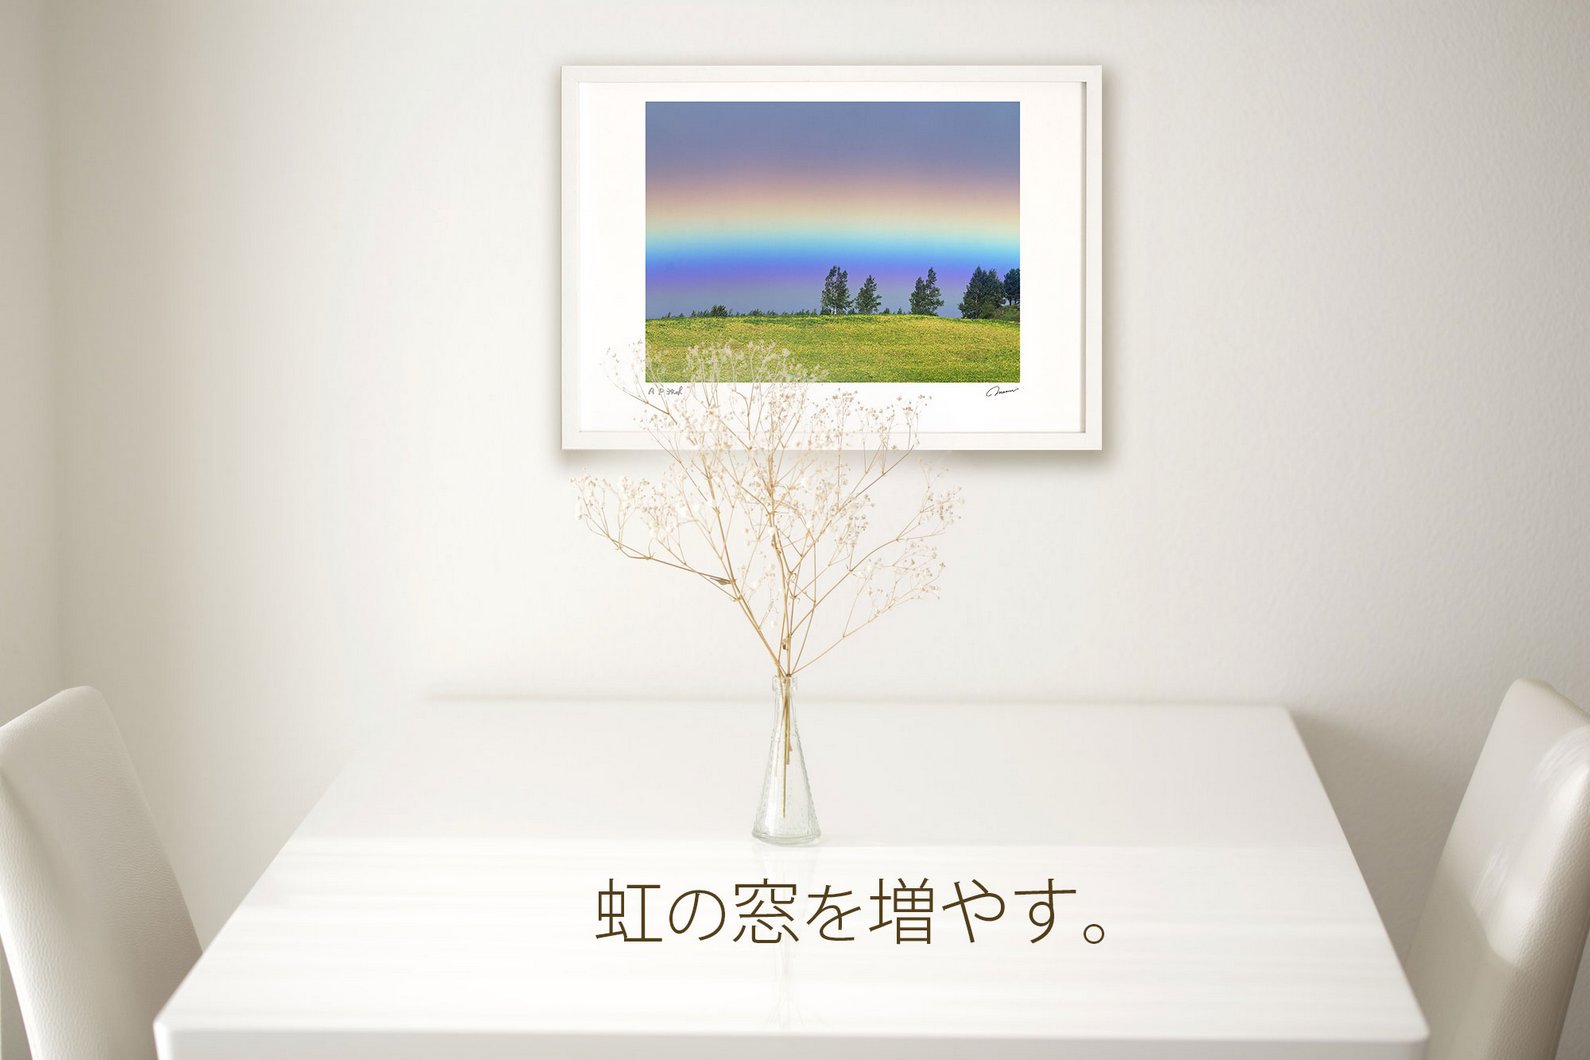 版画 絵画 桜と菜の花2021(横)/アートフォト 壁掛け 額入り 